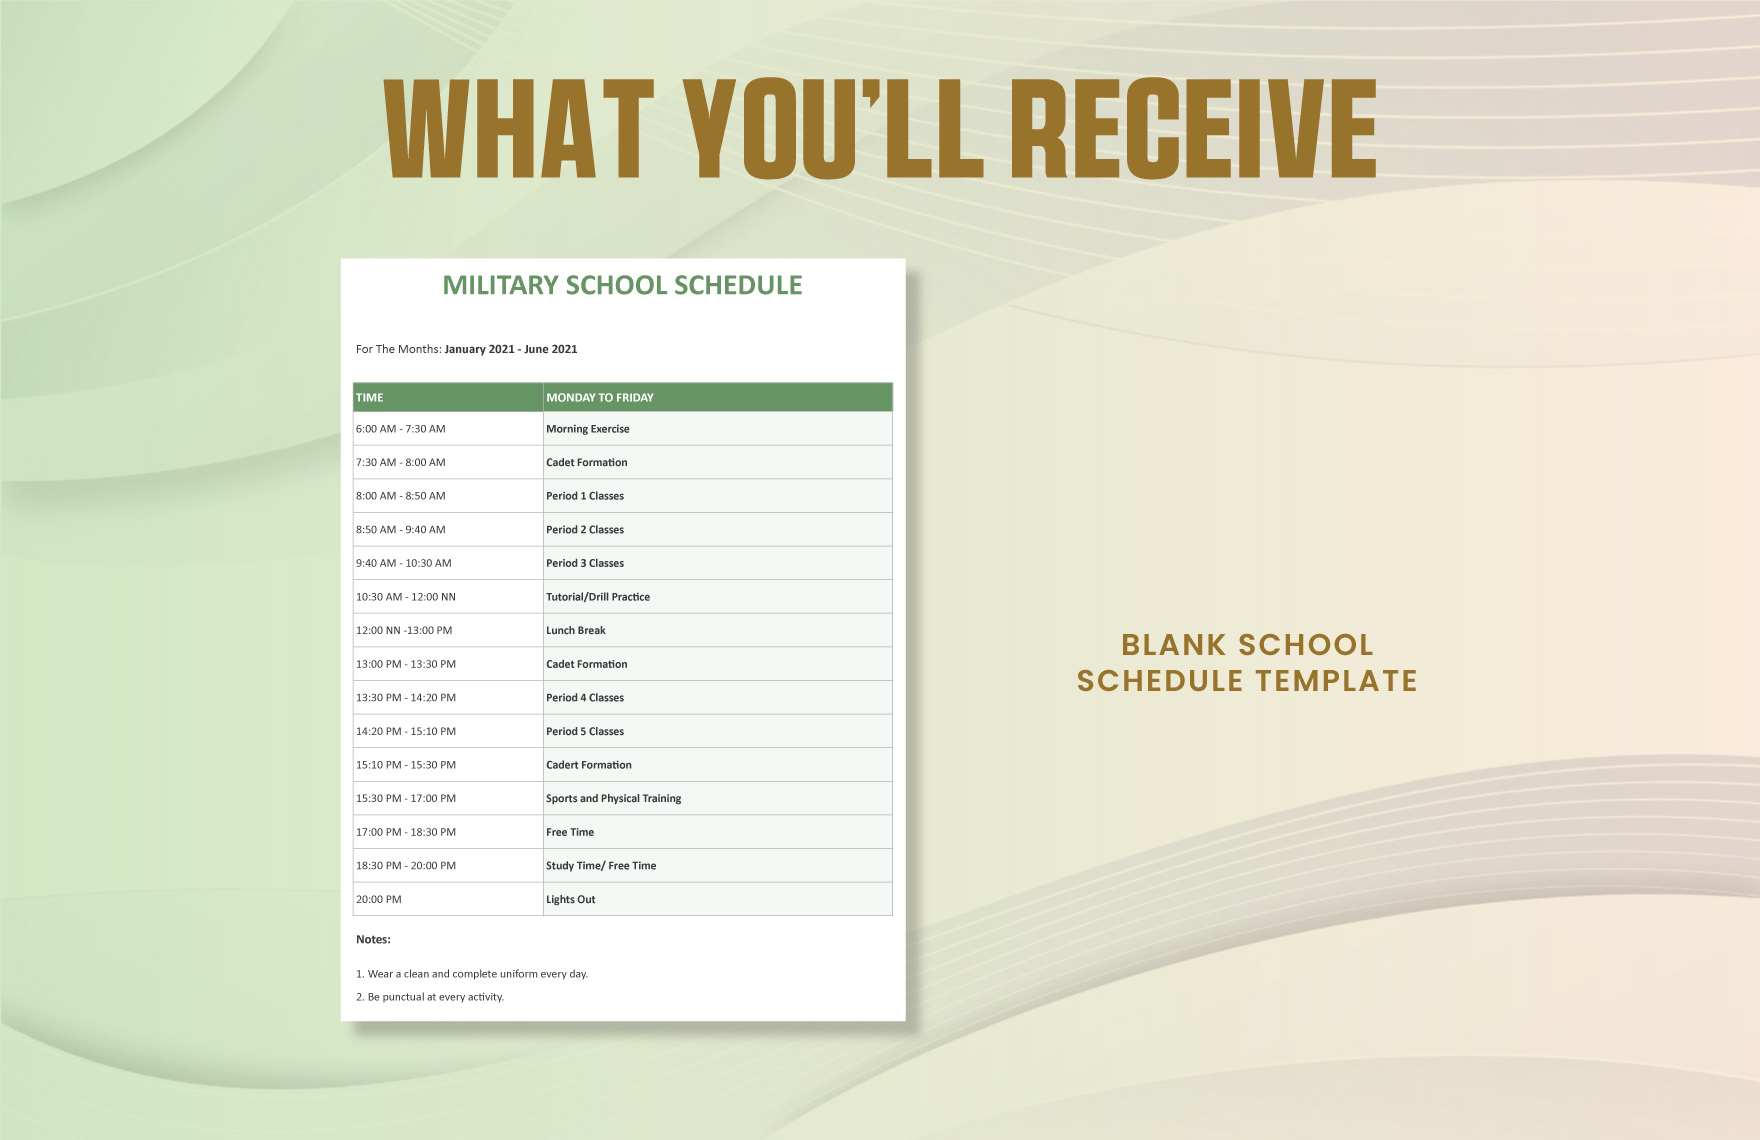 Blank School Schedule Template